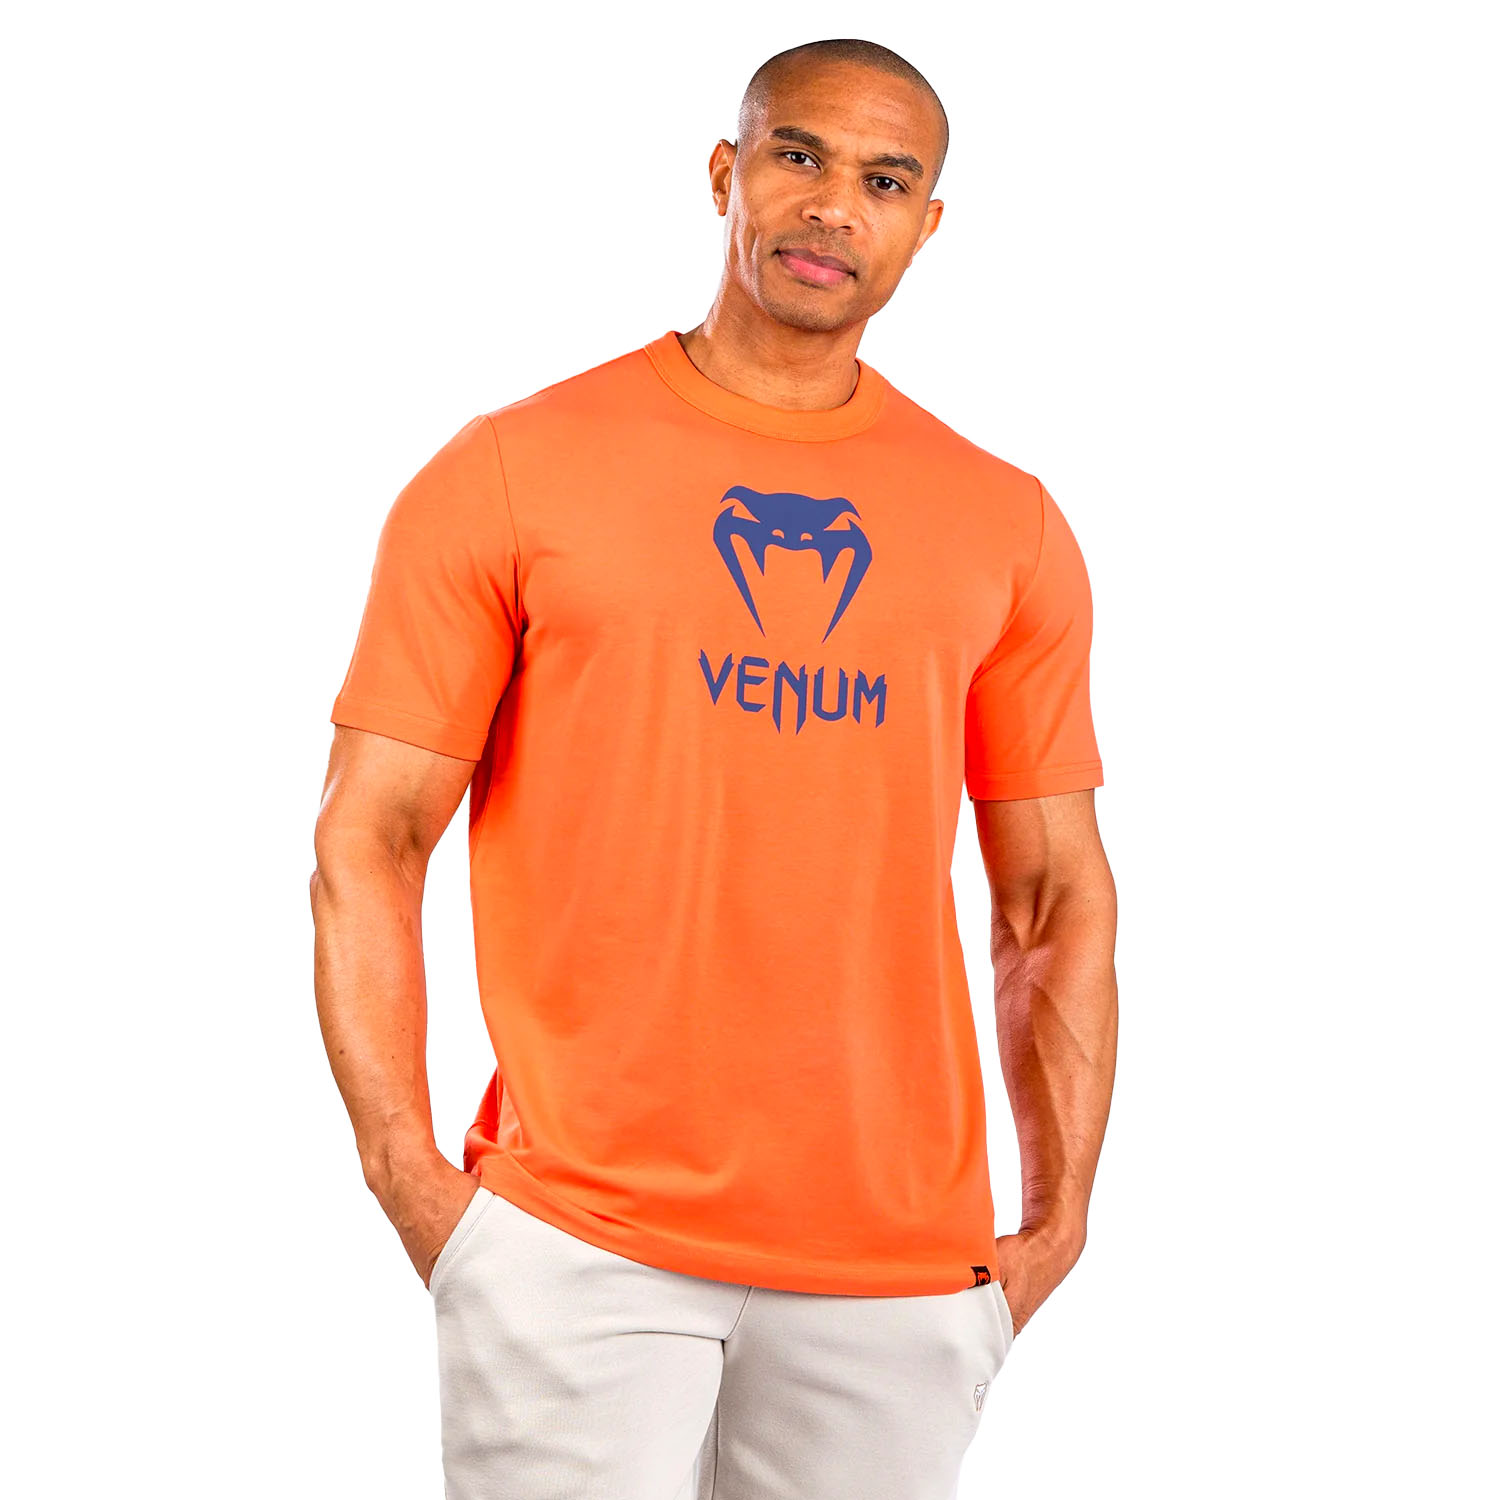 VENUM T-Shirt, Classic, orange-navy, M